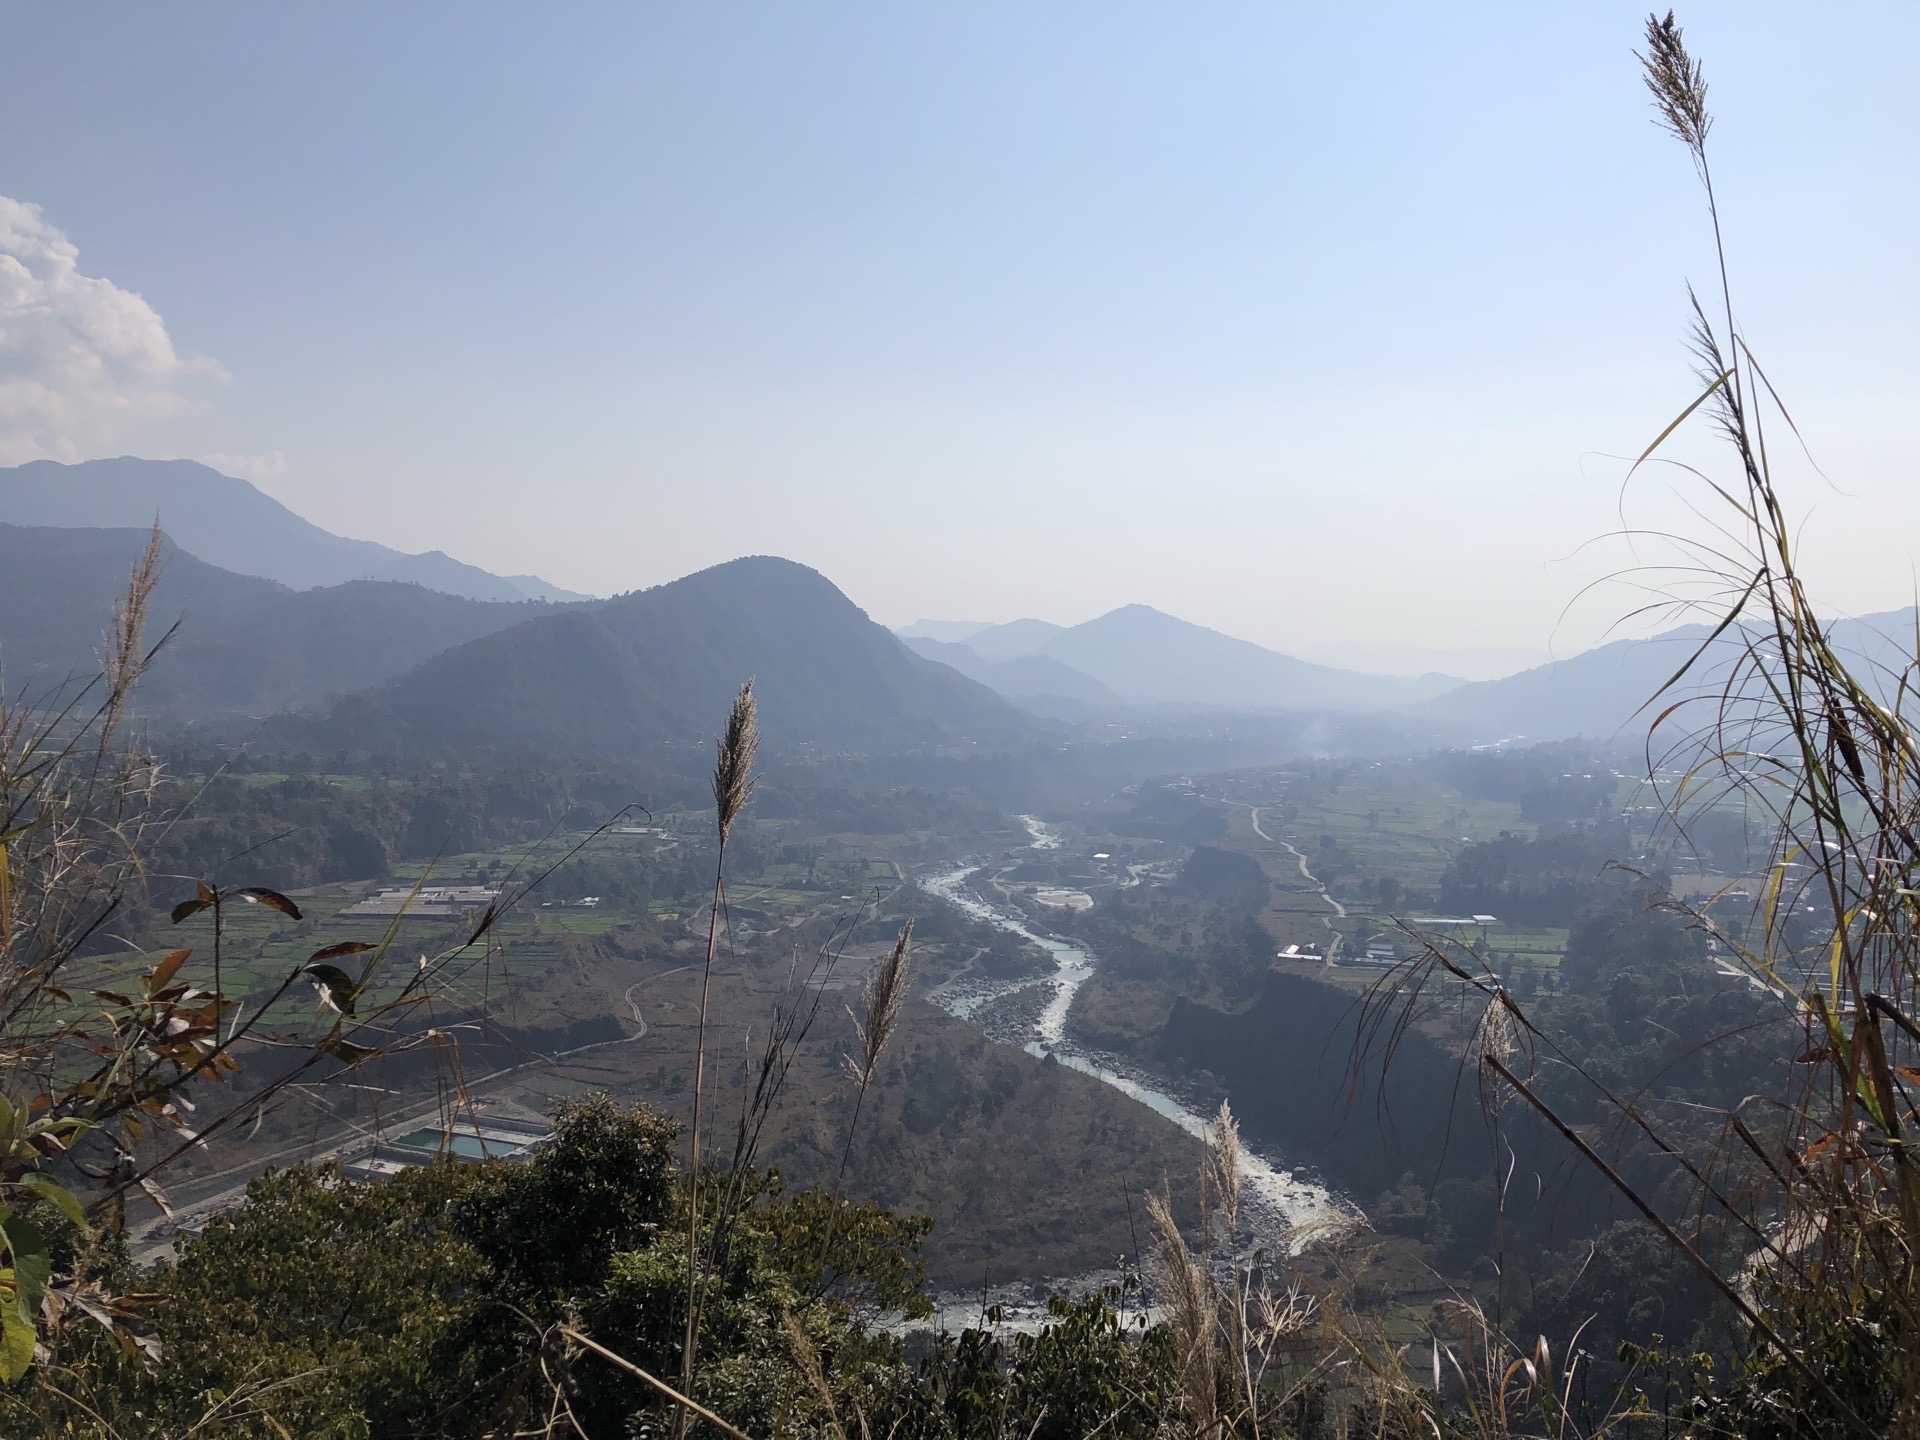 喜马拉雅山脉🏔️15km轻徒步，不走常规路，沿途尼泊尔的小村庄，还有梯田、雪山、河流 老鹰🦅在天空飞